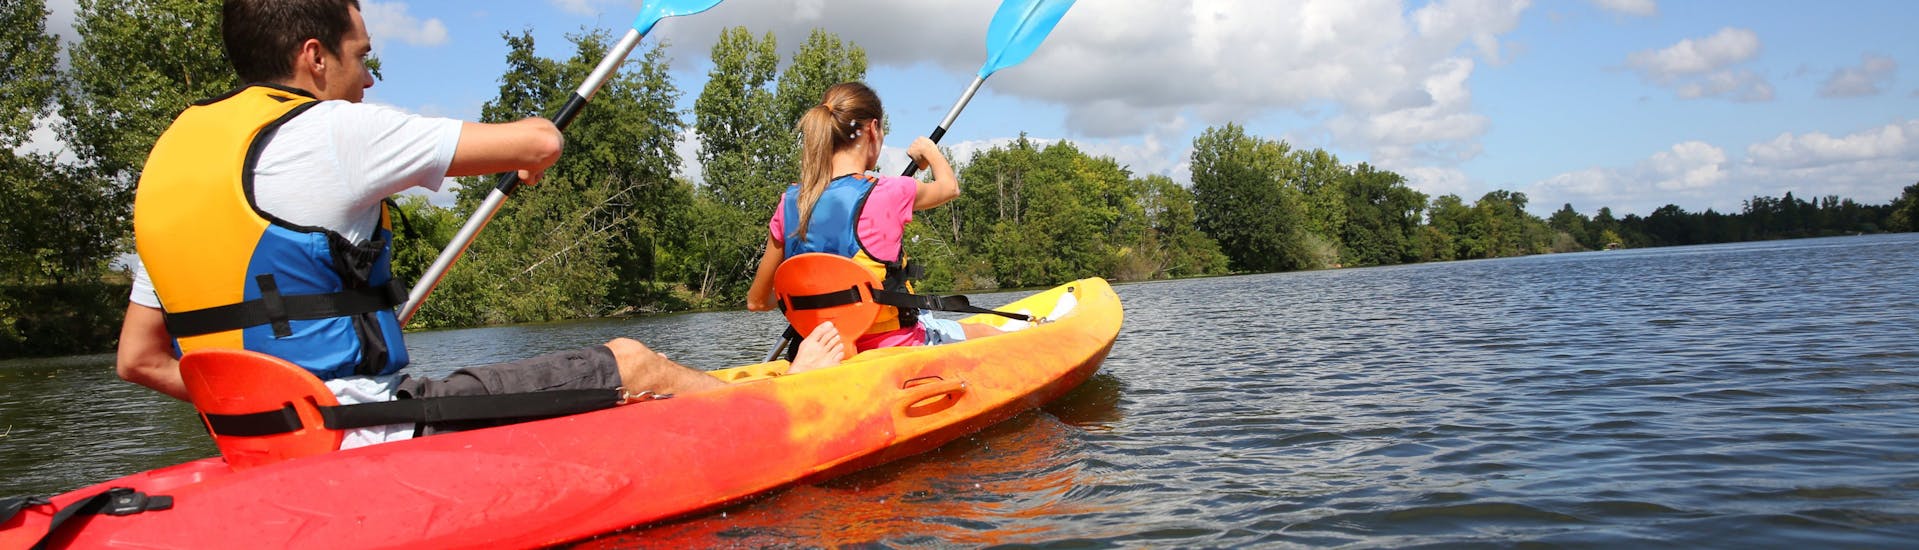 Kayak y piragua fácil en Chalonnes-sur-Loire - Loire River.